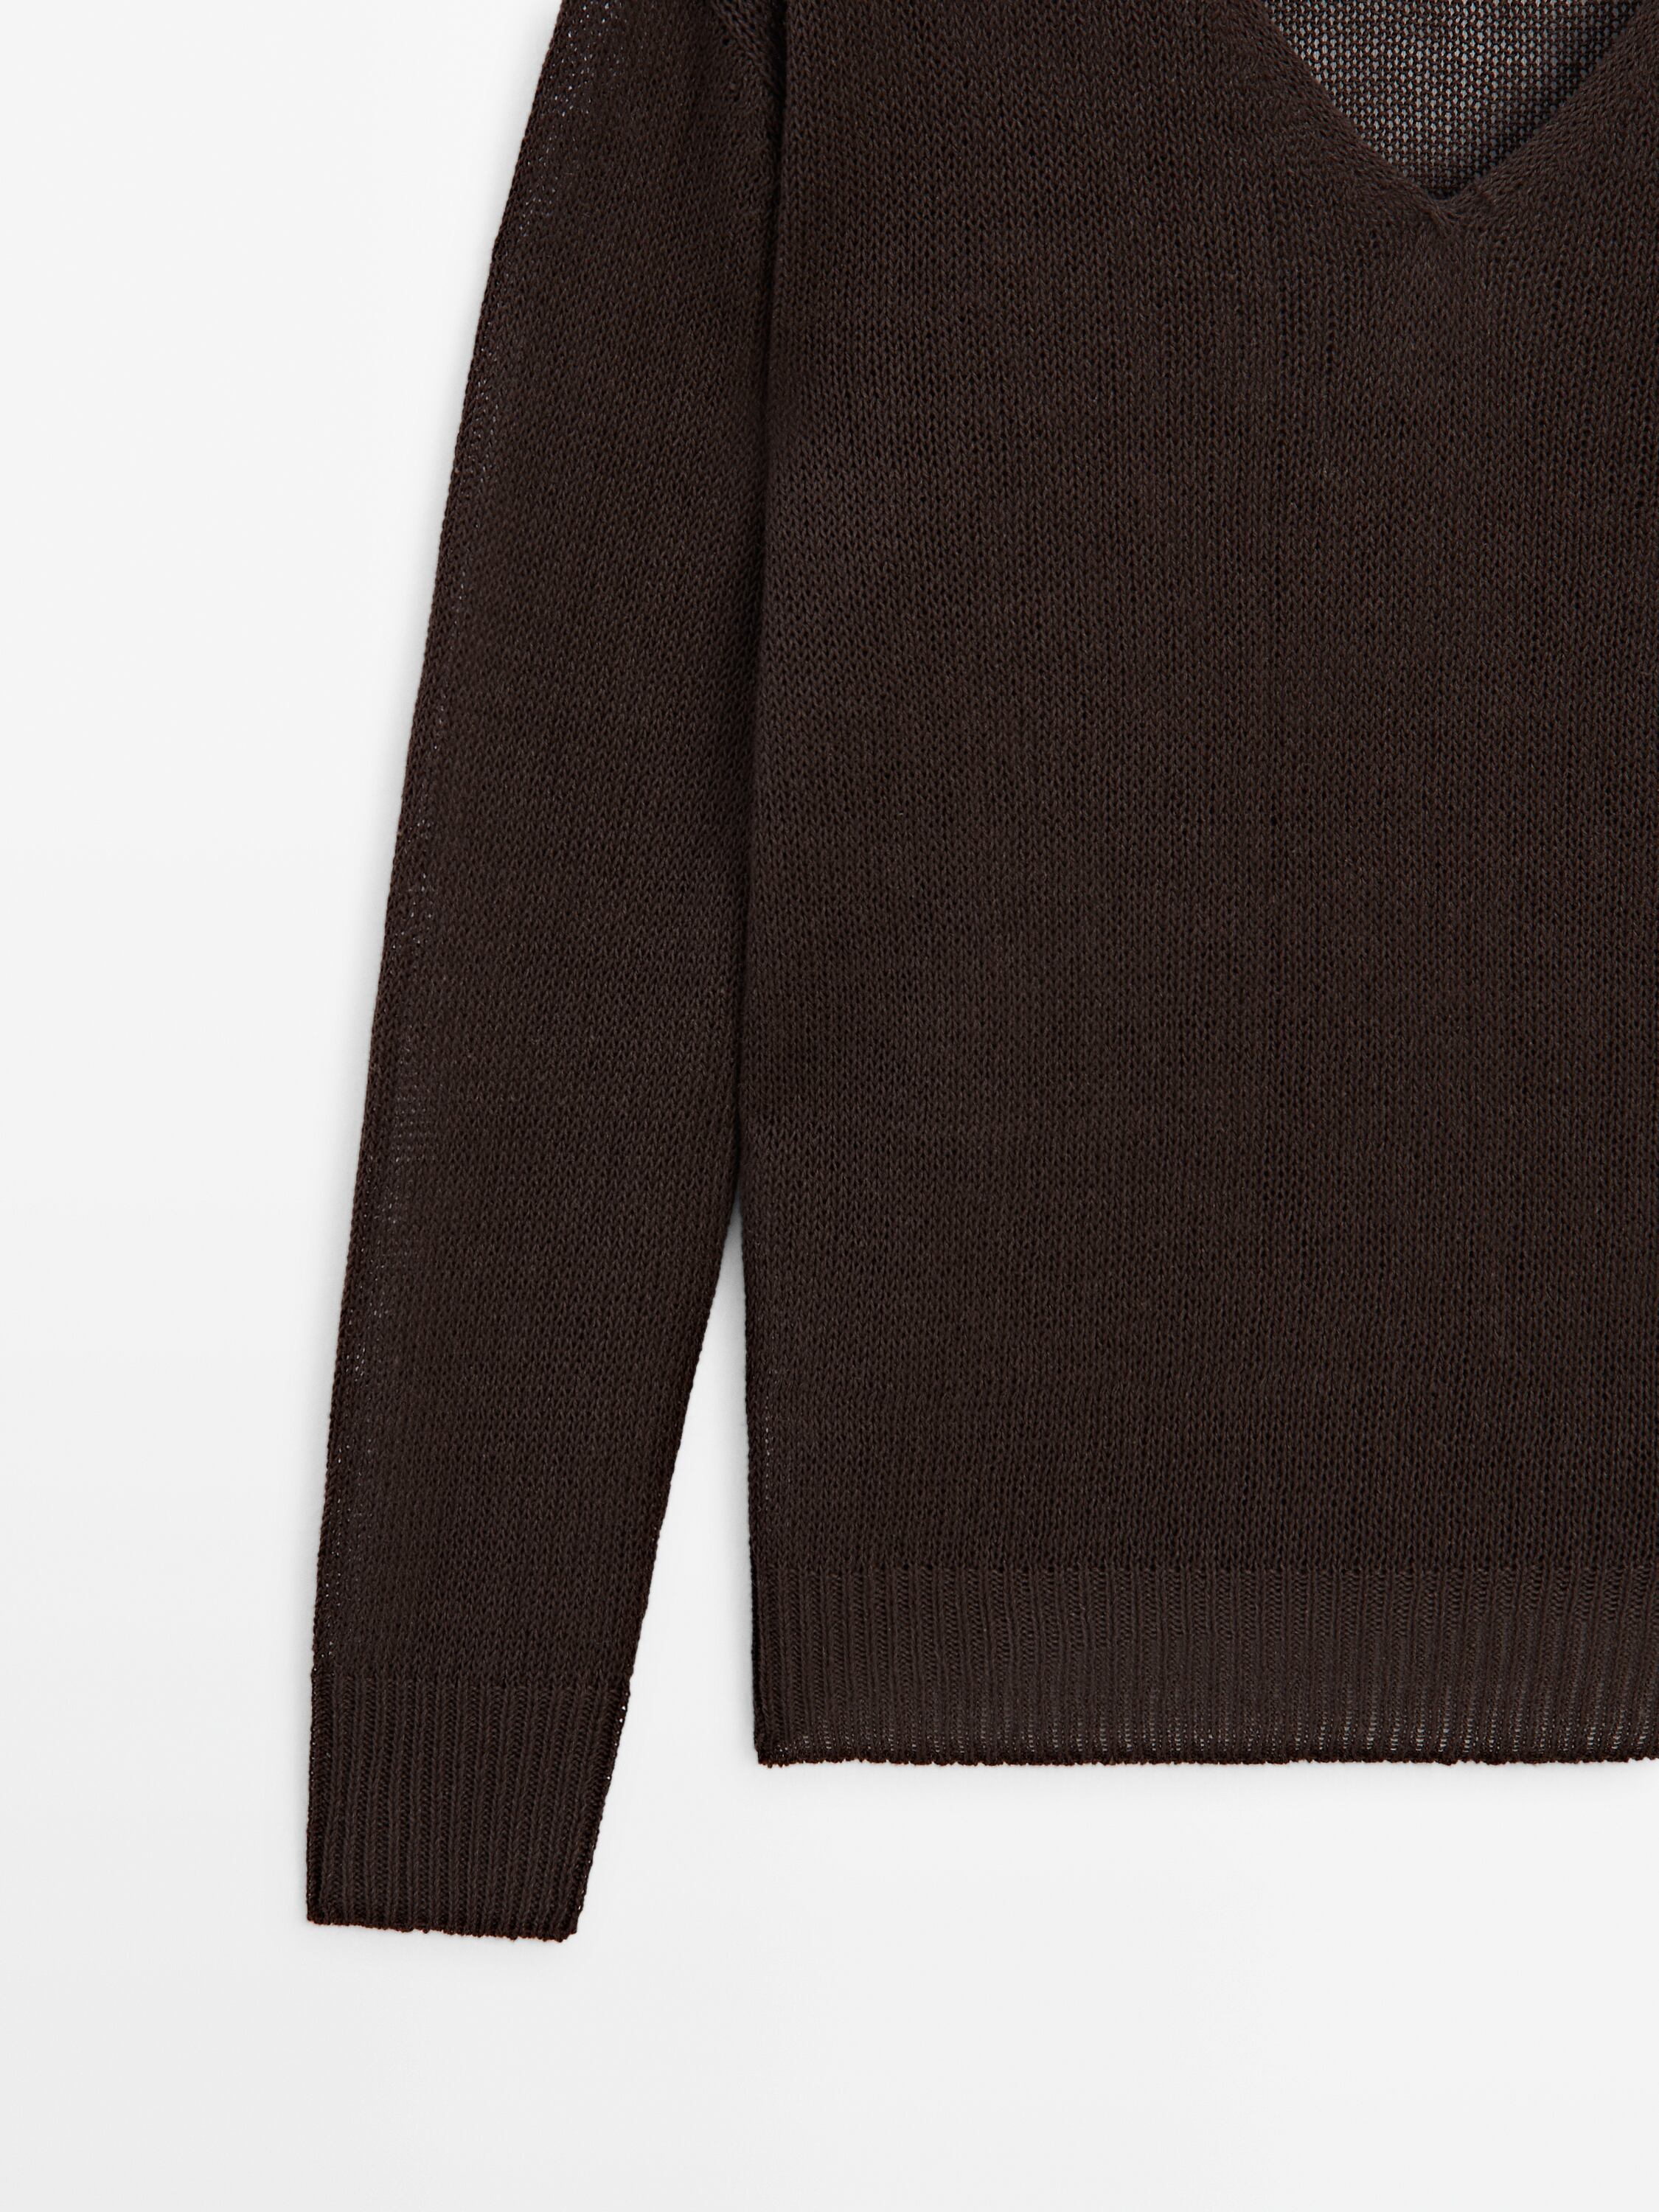 100% linen V-neck sweater